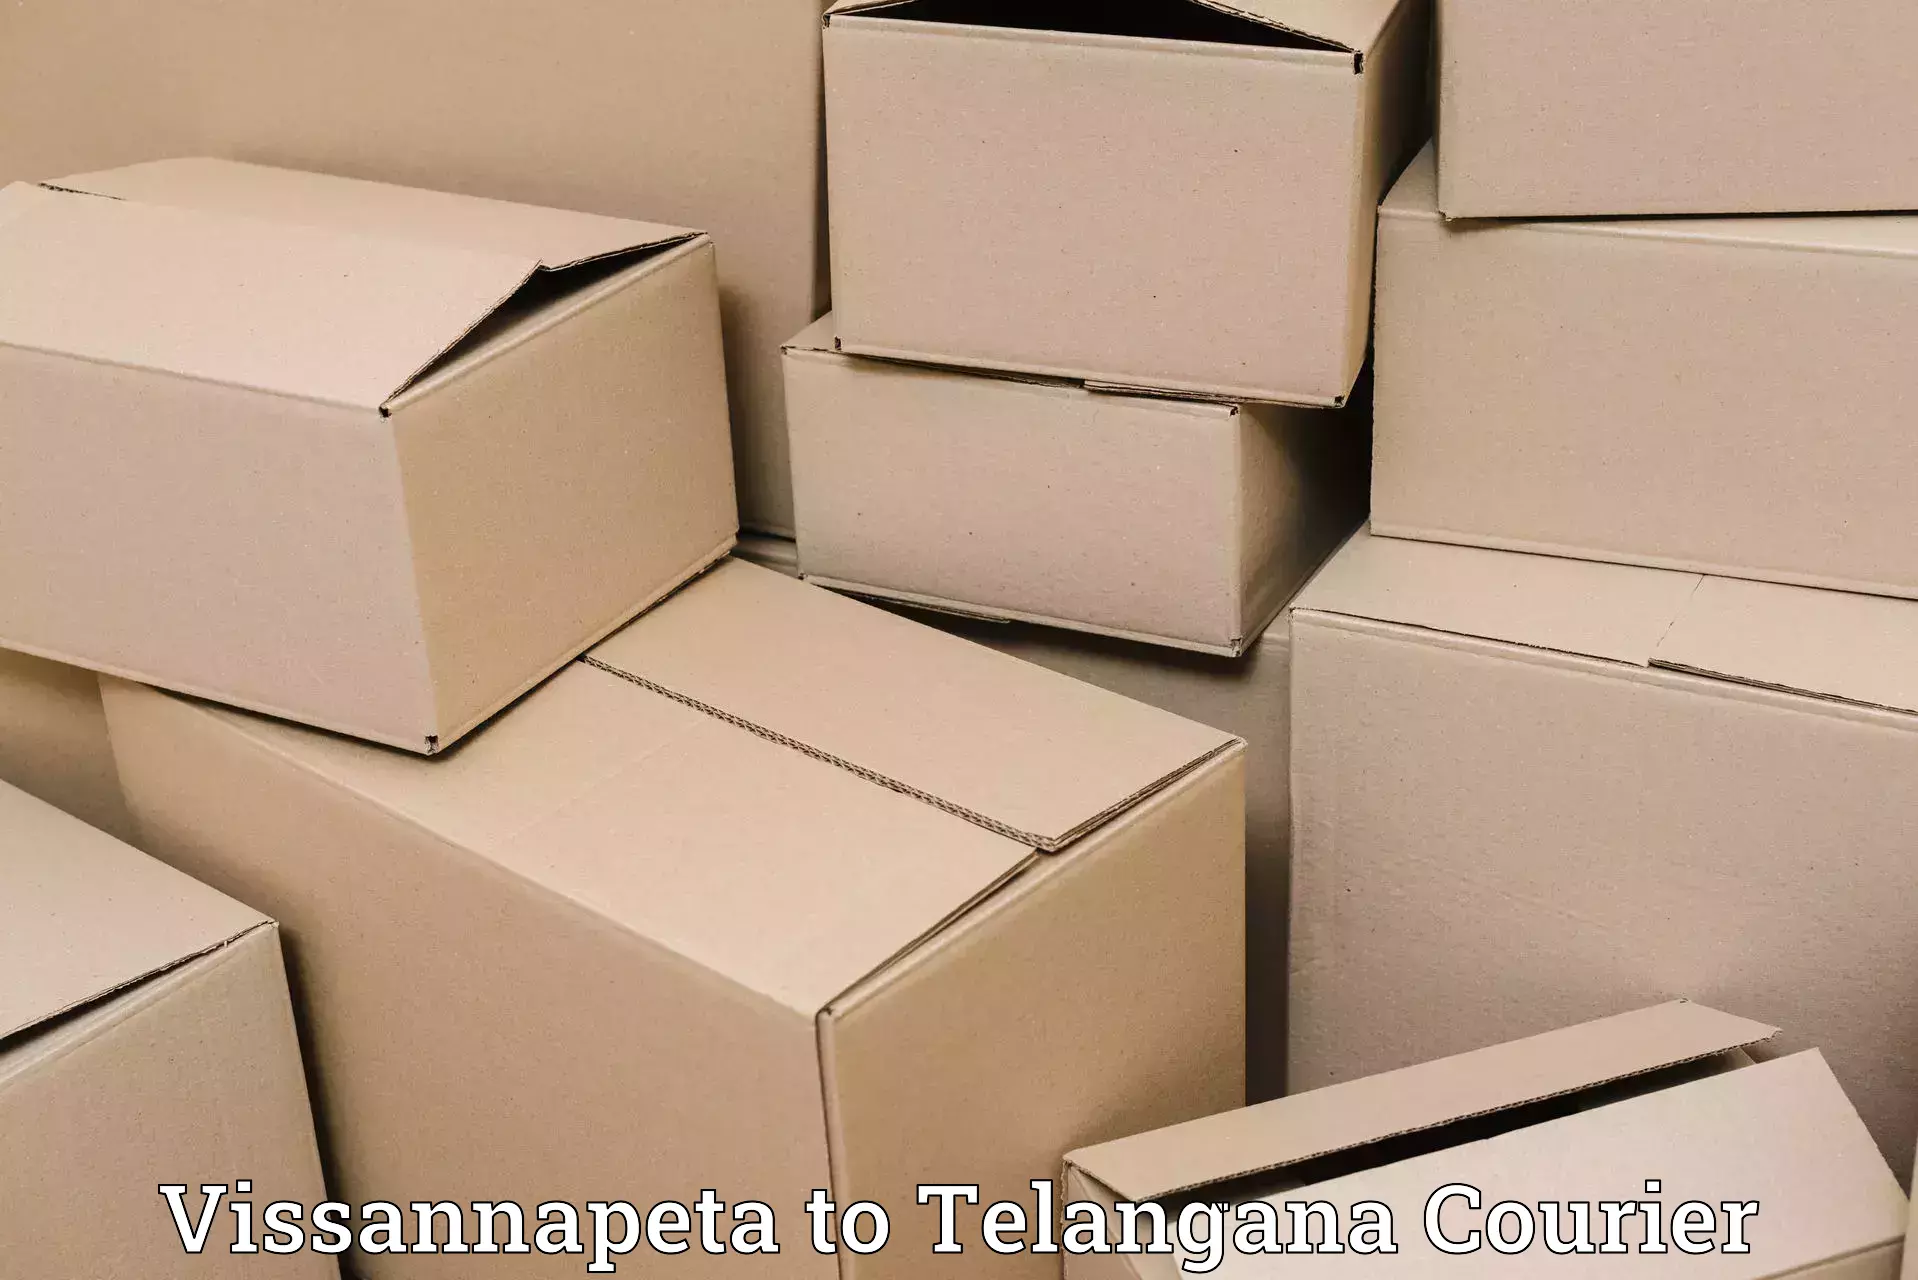 Luggage shipment tracking Vissannapeta to Telangana